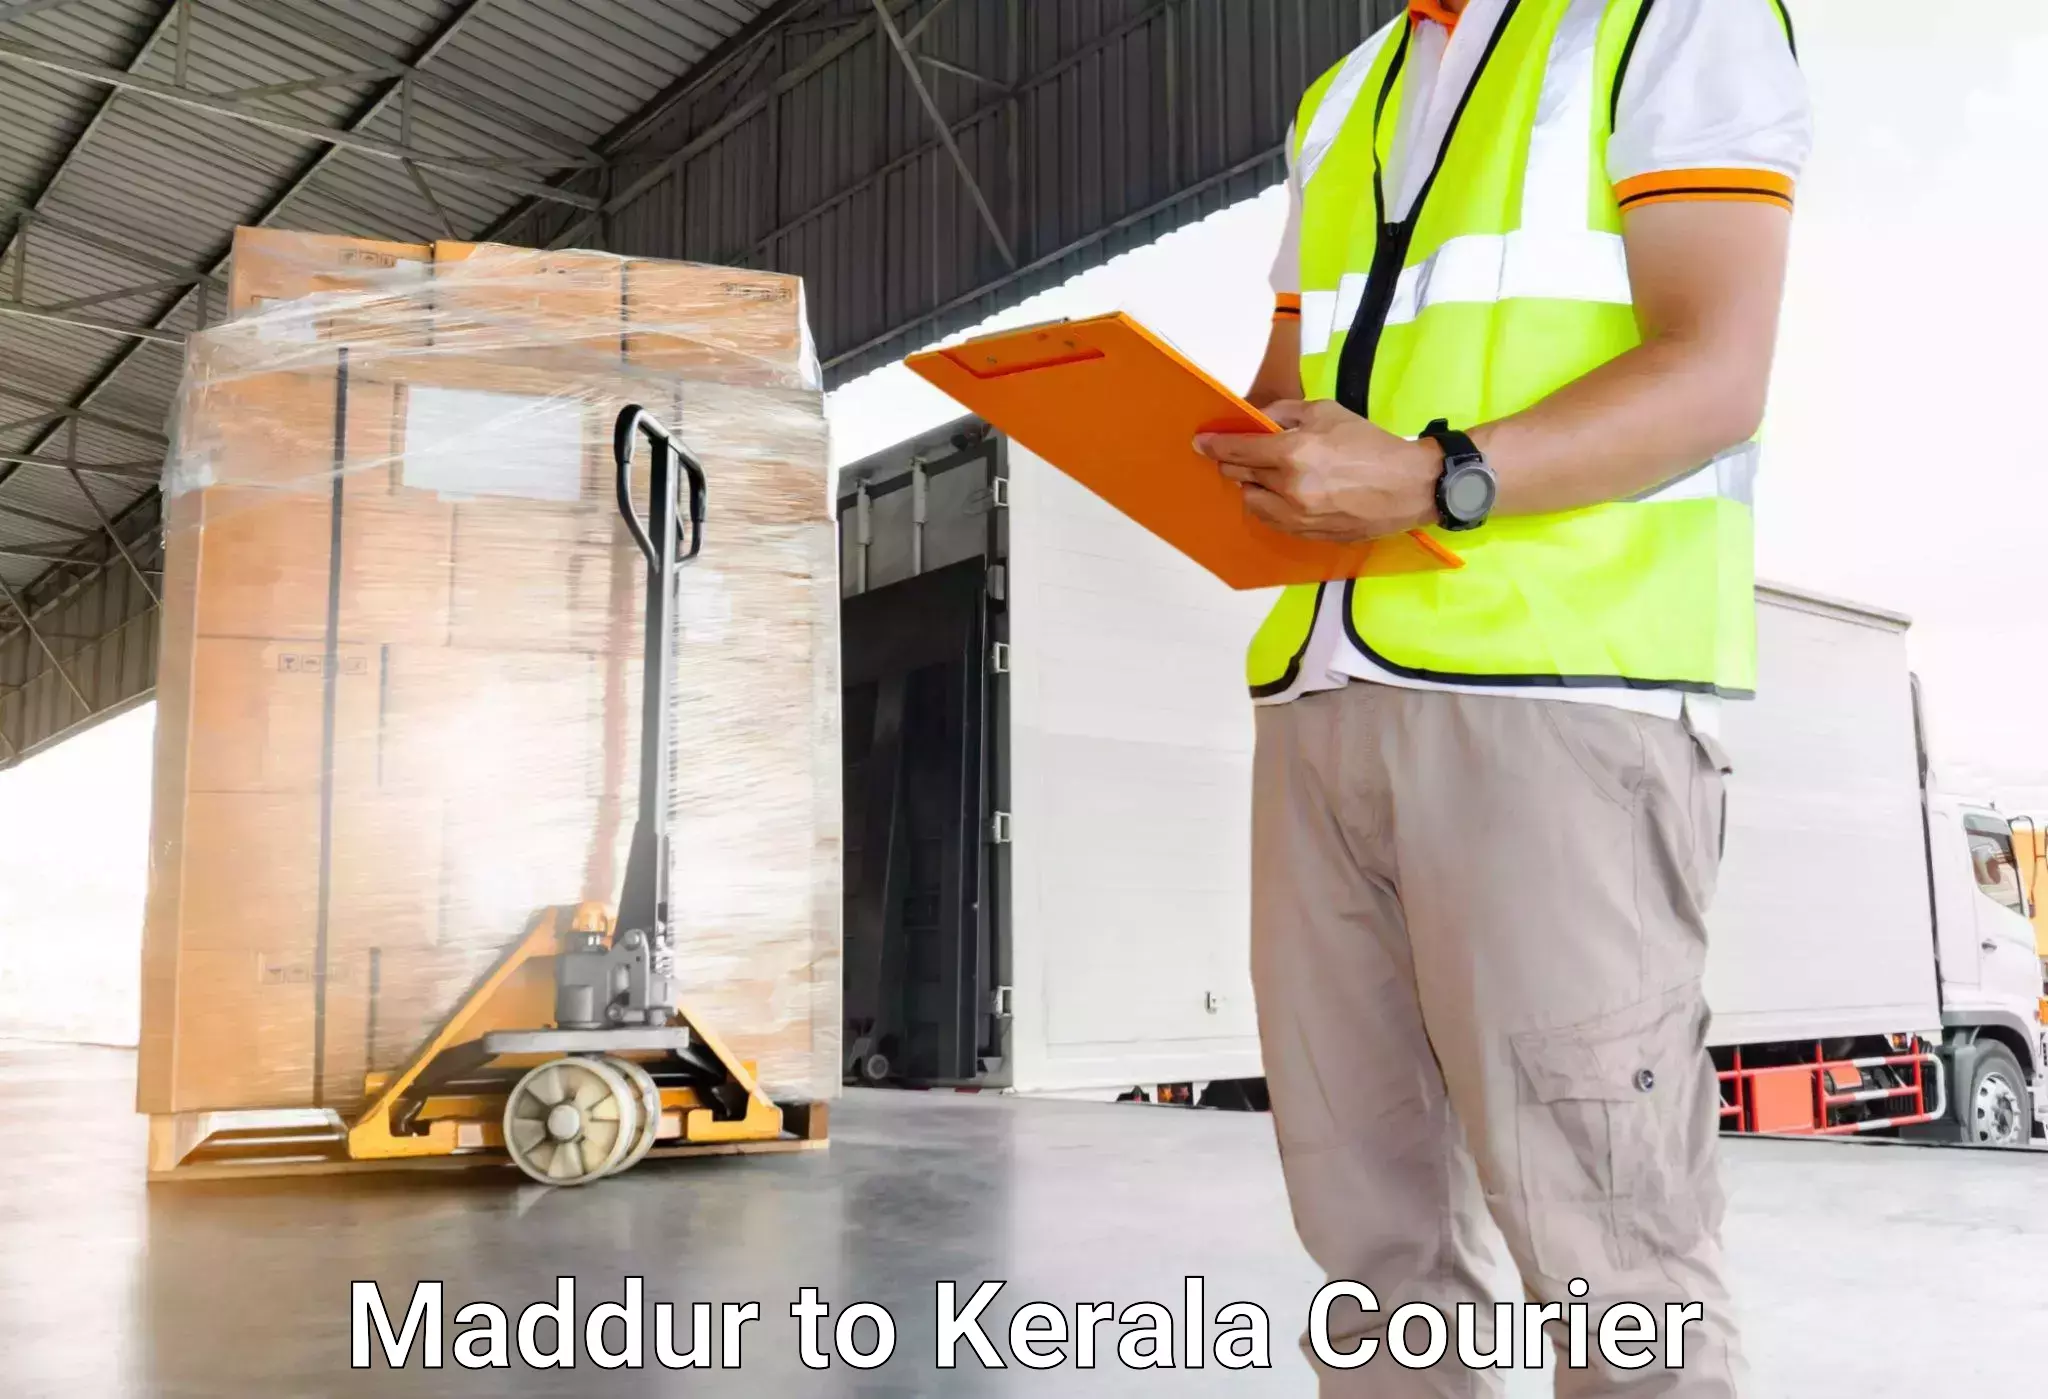 Door-to-door baggage service in Maddur to IIIT Kottayam